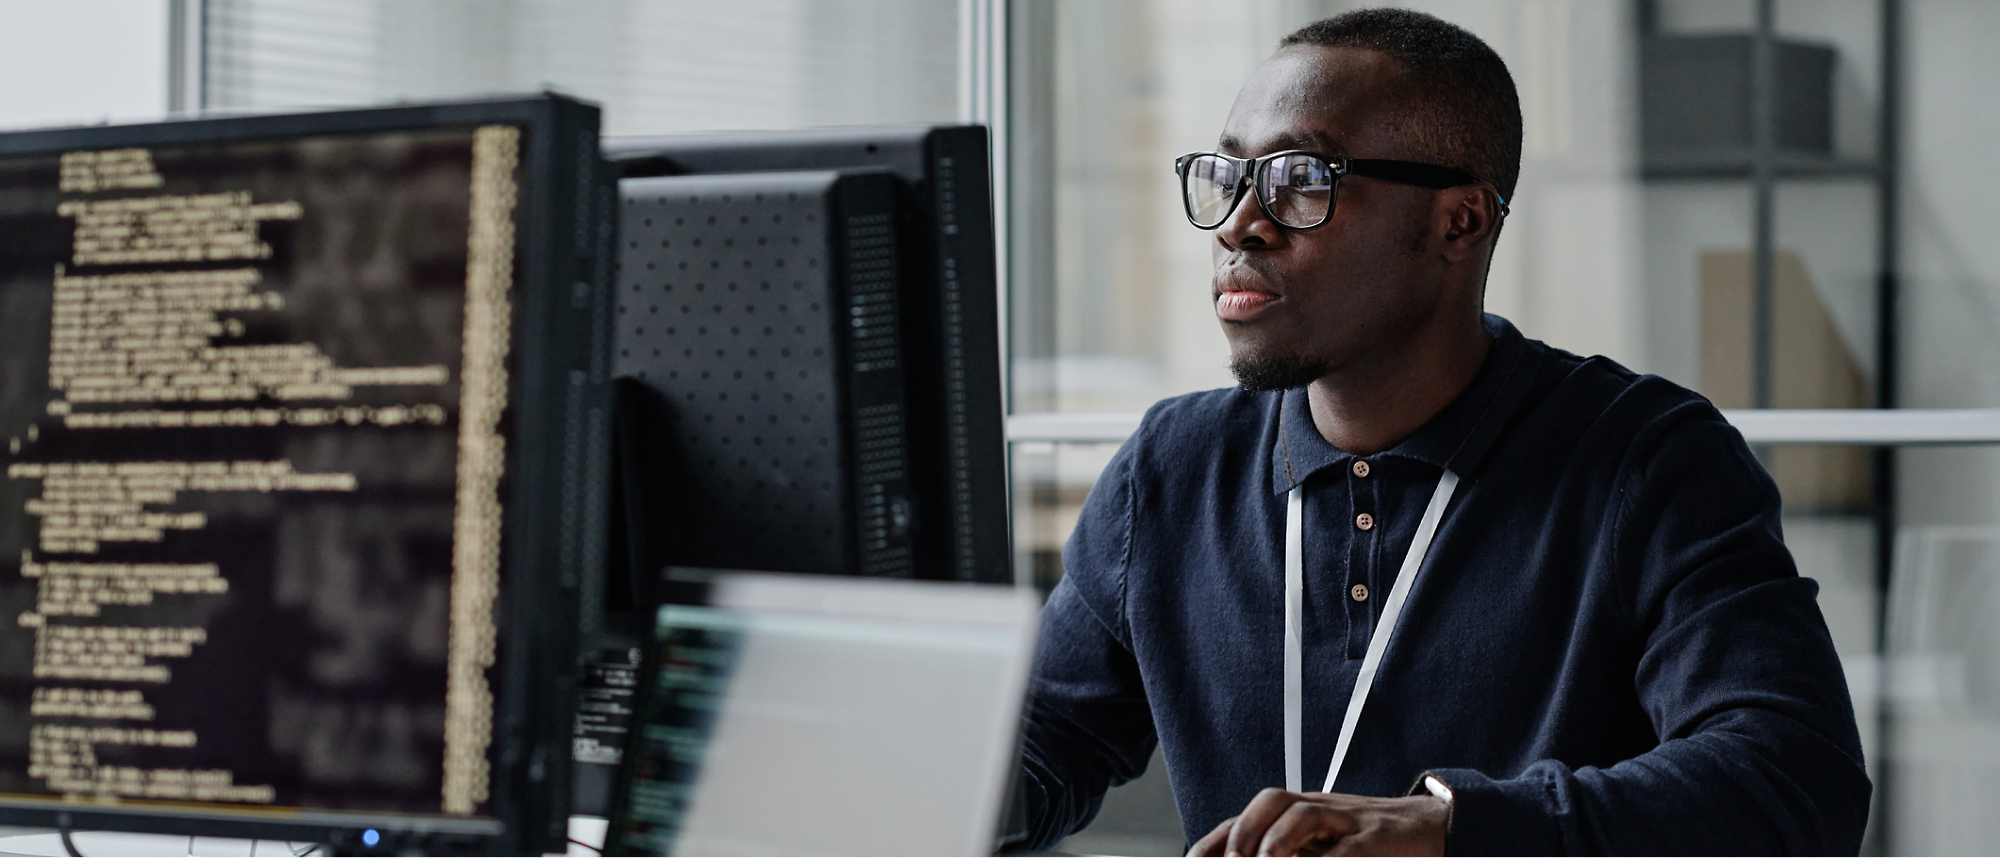 Мужчина в очках и темной футболке работает за компьютером в офисе. На экране — строки кода.